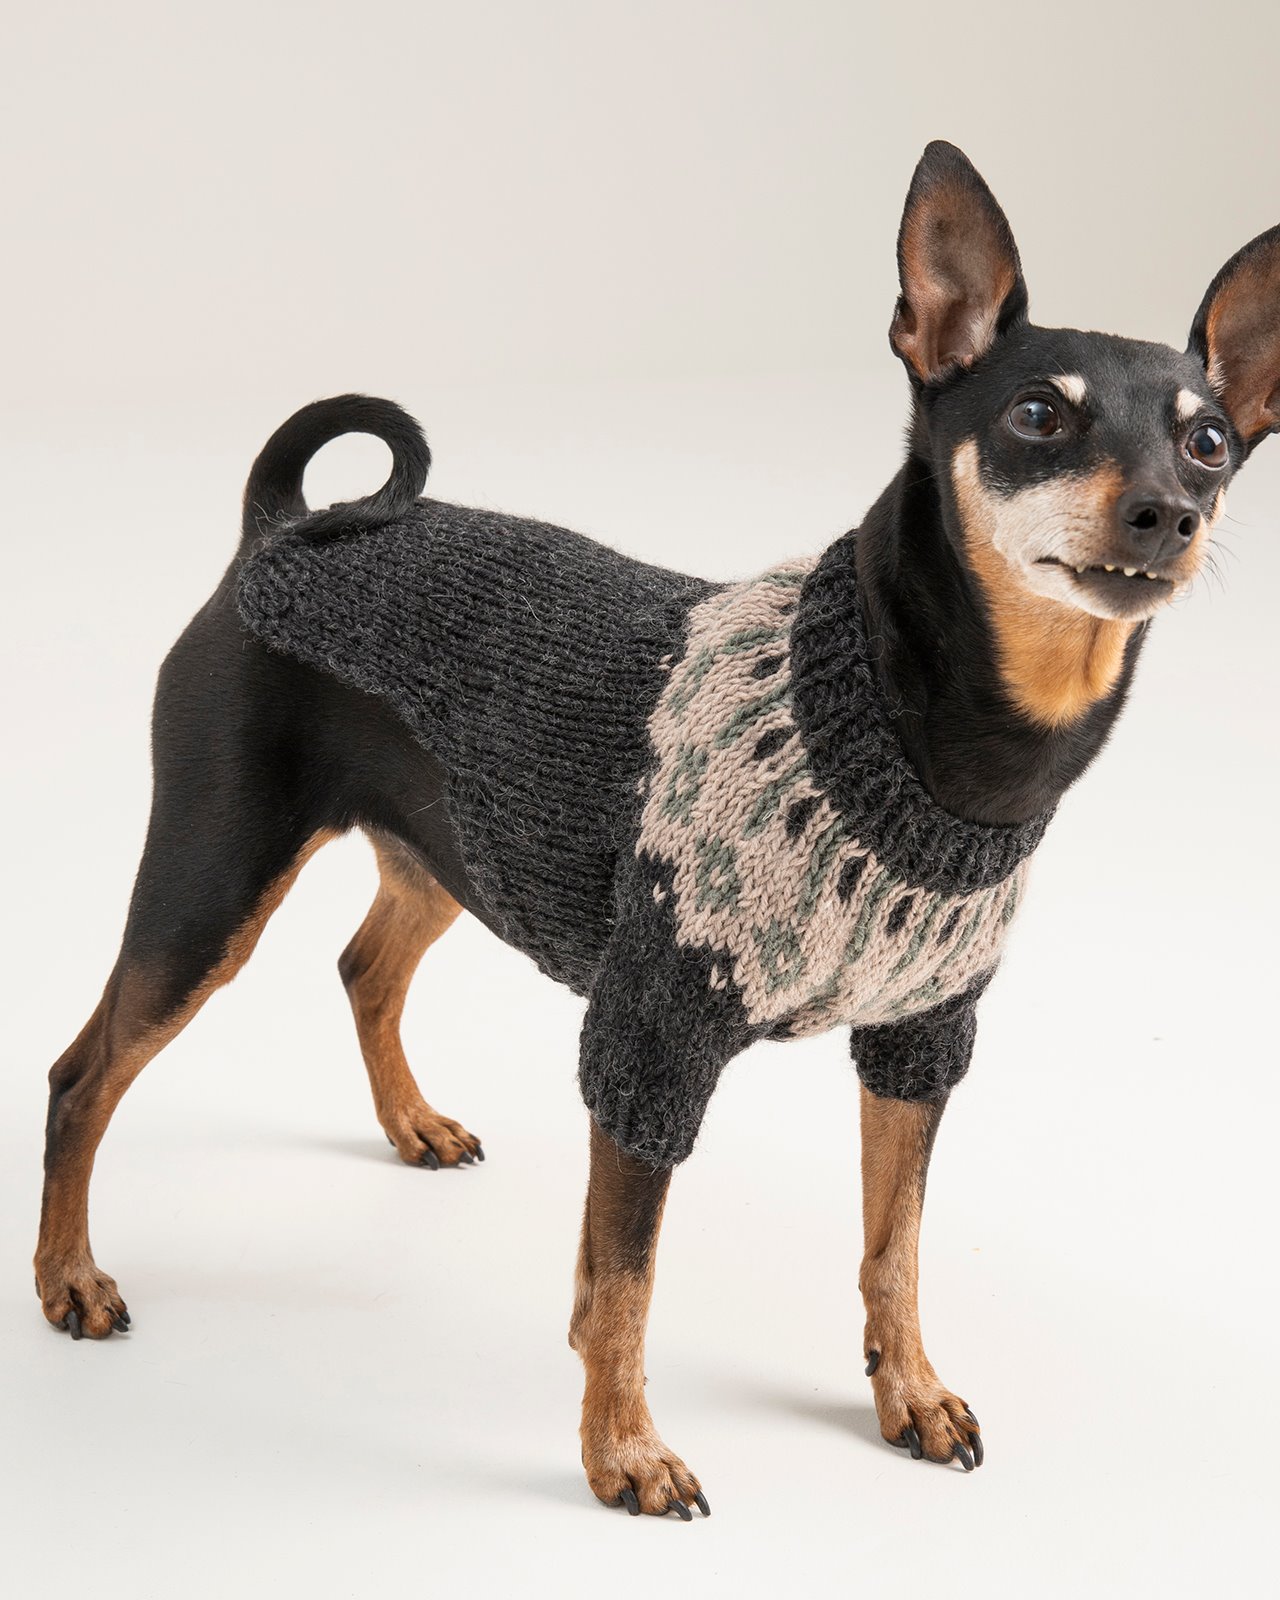 FRAYA knitting pattern - Chili Dog Sweater, accessories FRAYA4025_image_DogSweater.jpg